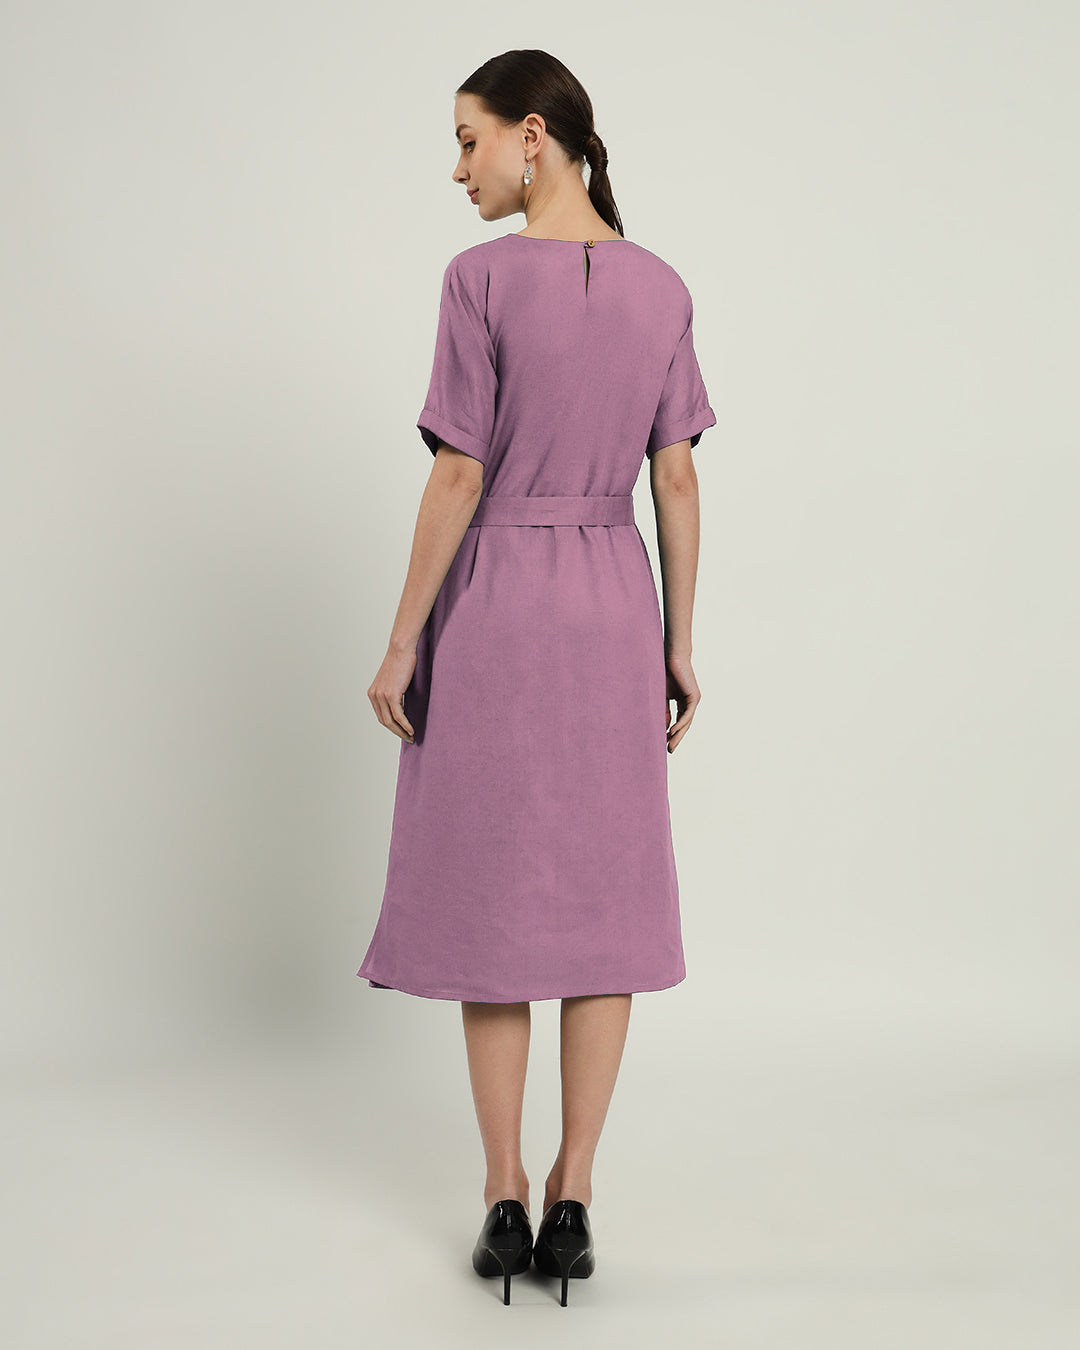 The Tayma Purple Swirl Dress